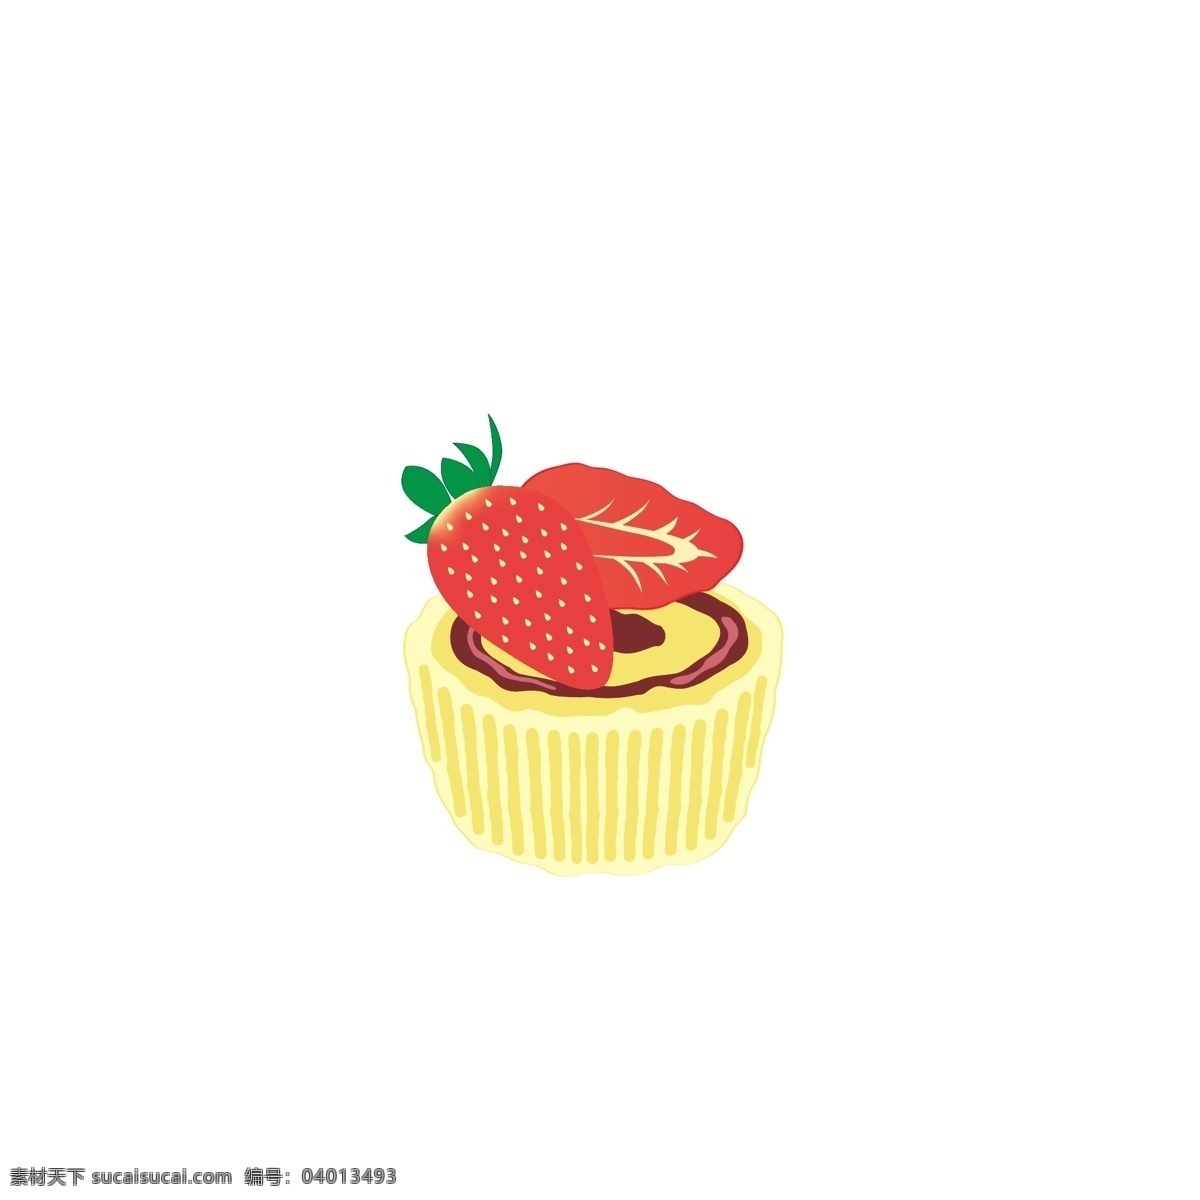 原创 草莓 蛋糕 甜点 点心 草莓当高 巧克力蛋糕 卡通蛋糕 卡通甜点